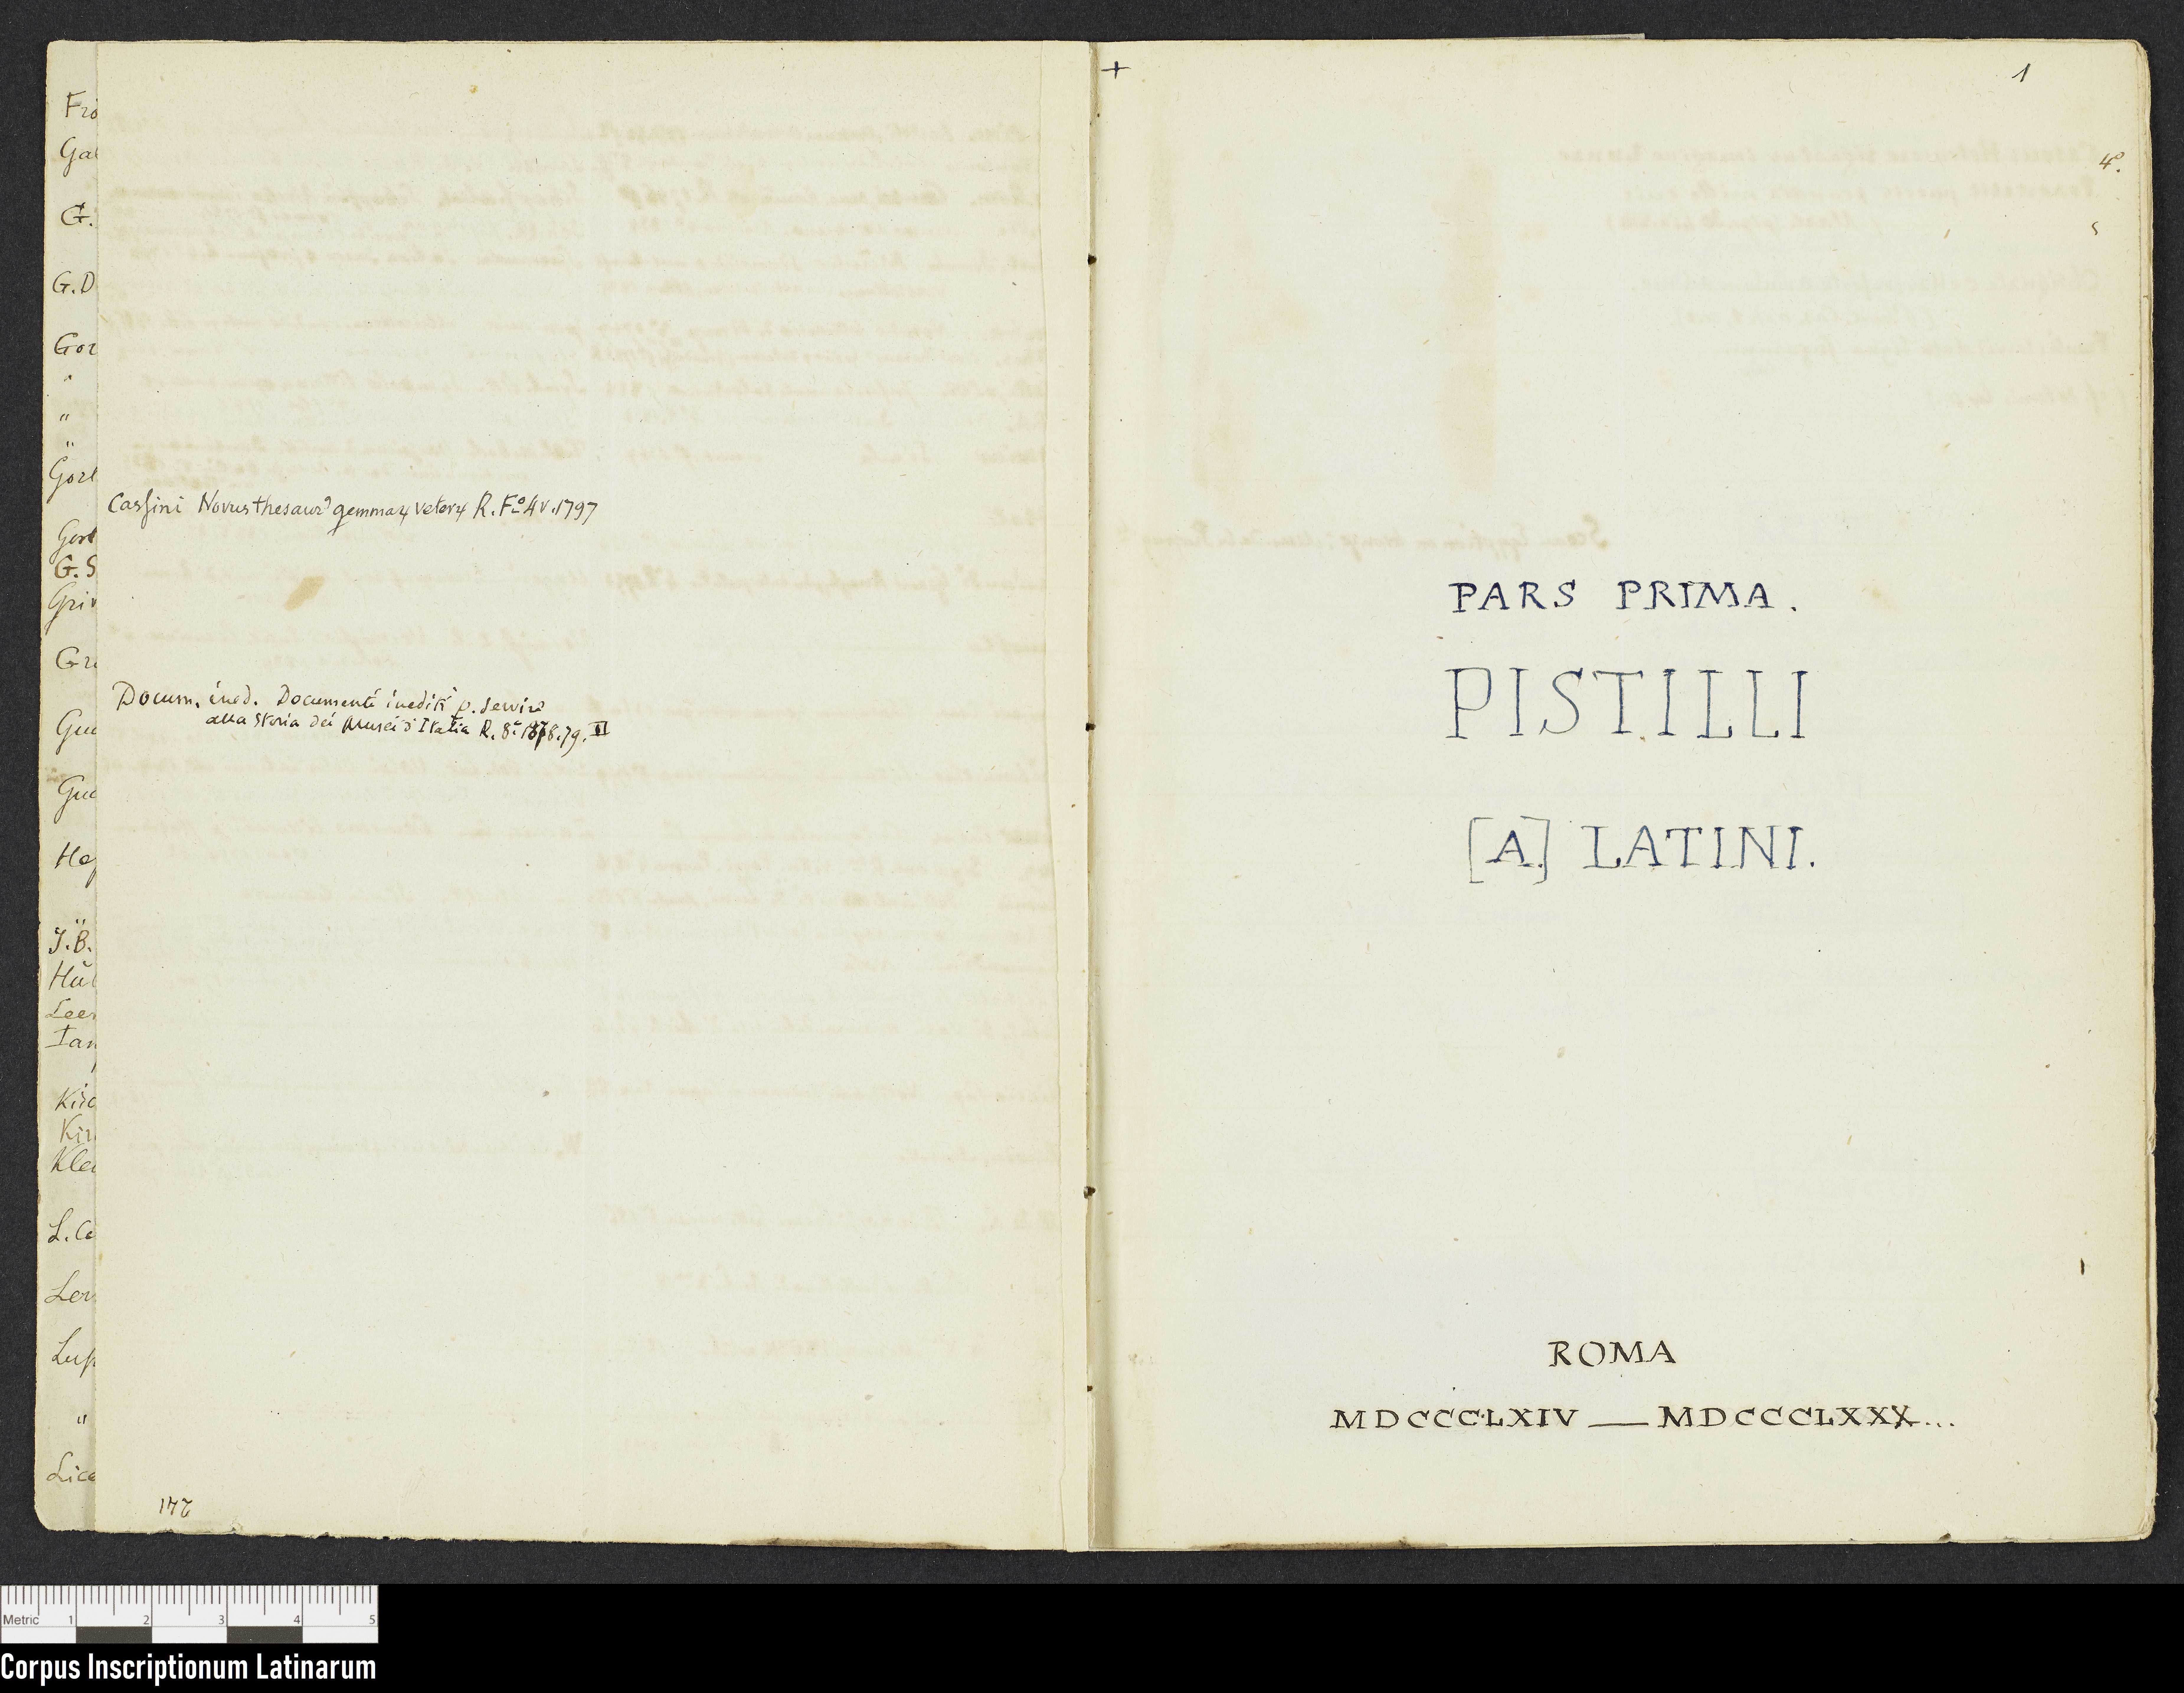 Notizbuch "Signacula" (Charles Descemet), Seiten IV und 1 (Corpus Inscriptionum Latinarum (CIL), Berlin-Brandenburgische Akademie der Wissenschaften (BBAW) Public Domain Mark)